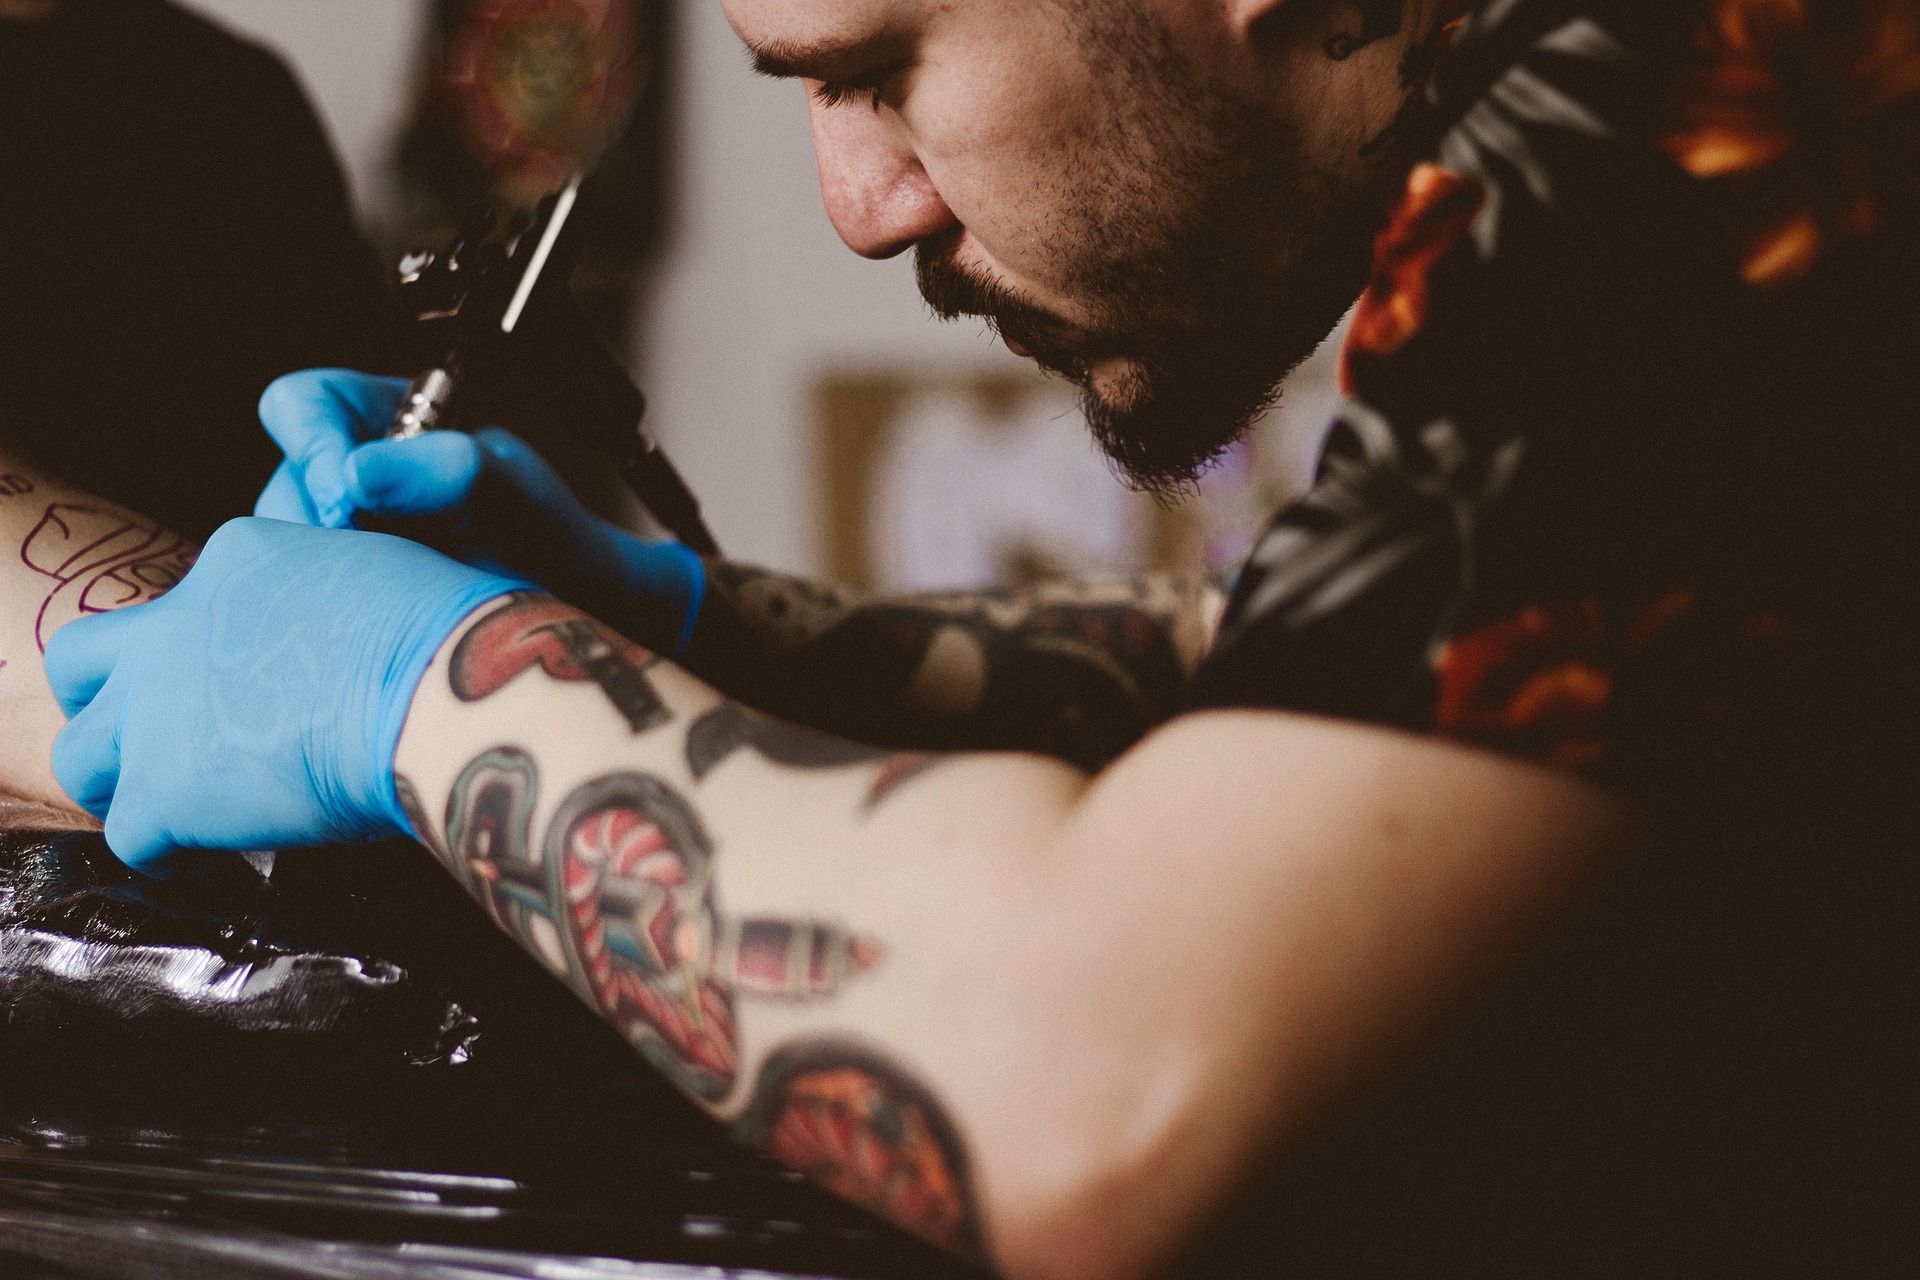 tatuador trabalhando na tatuagem de um cliente